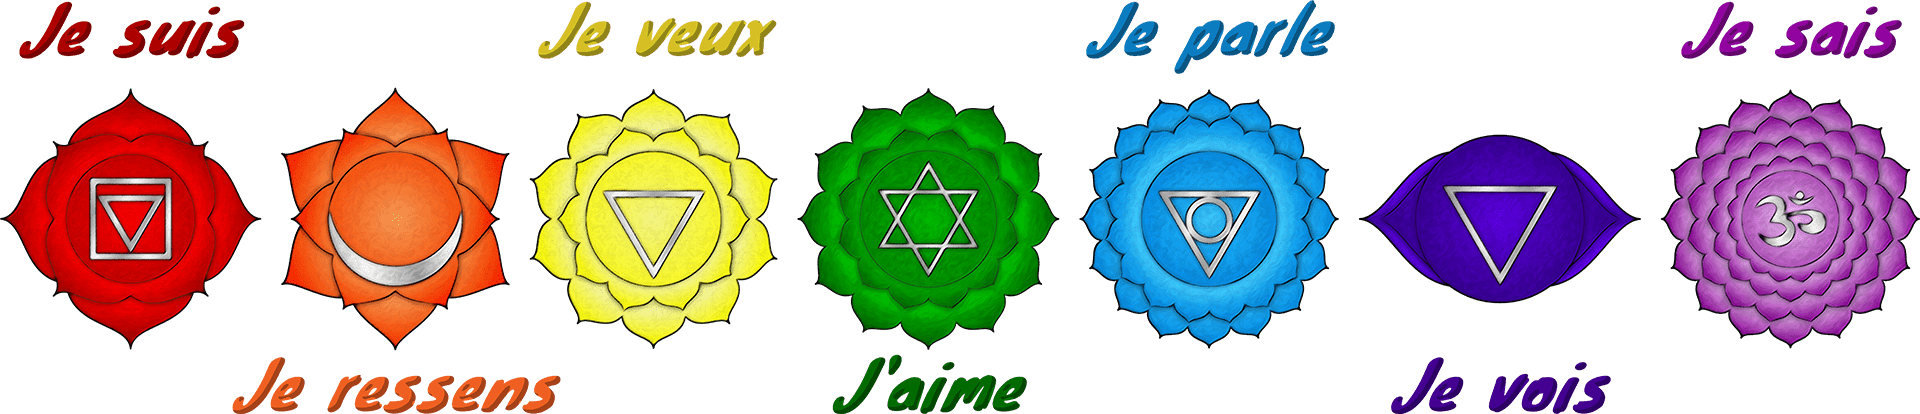 symboles 7 chakras